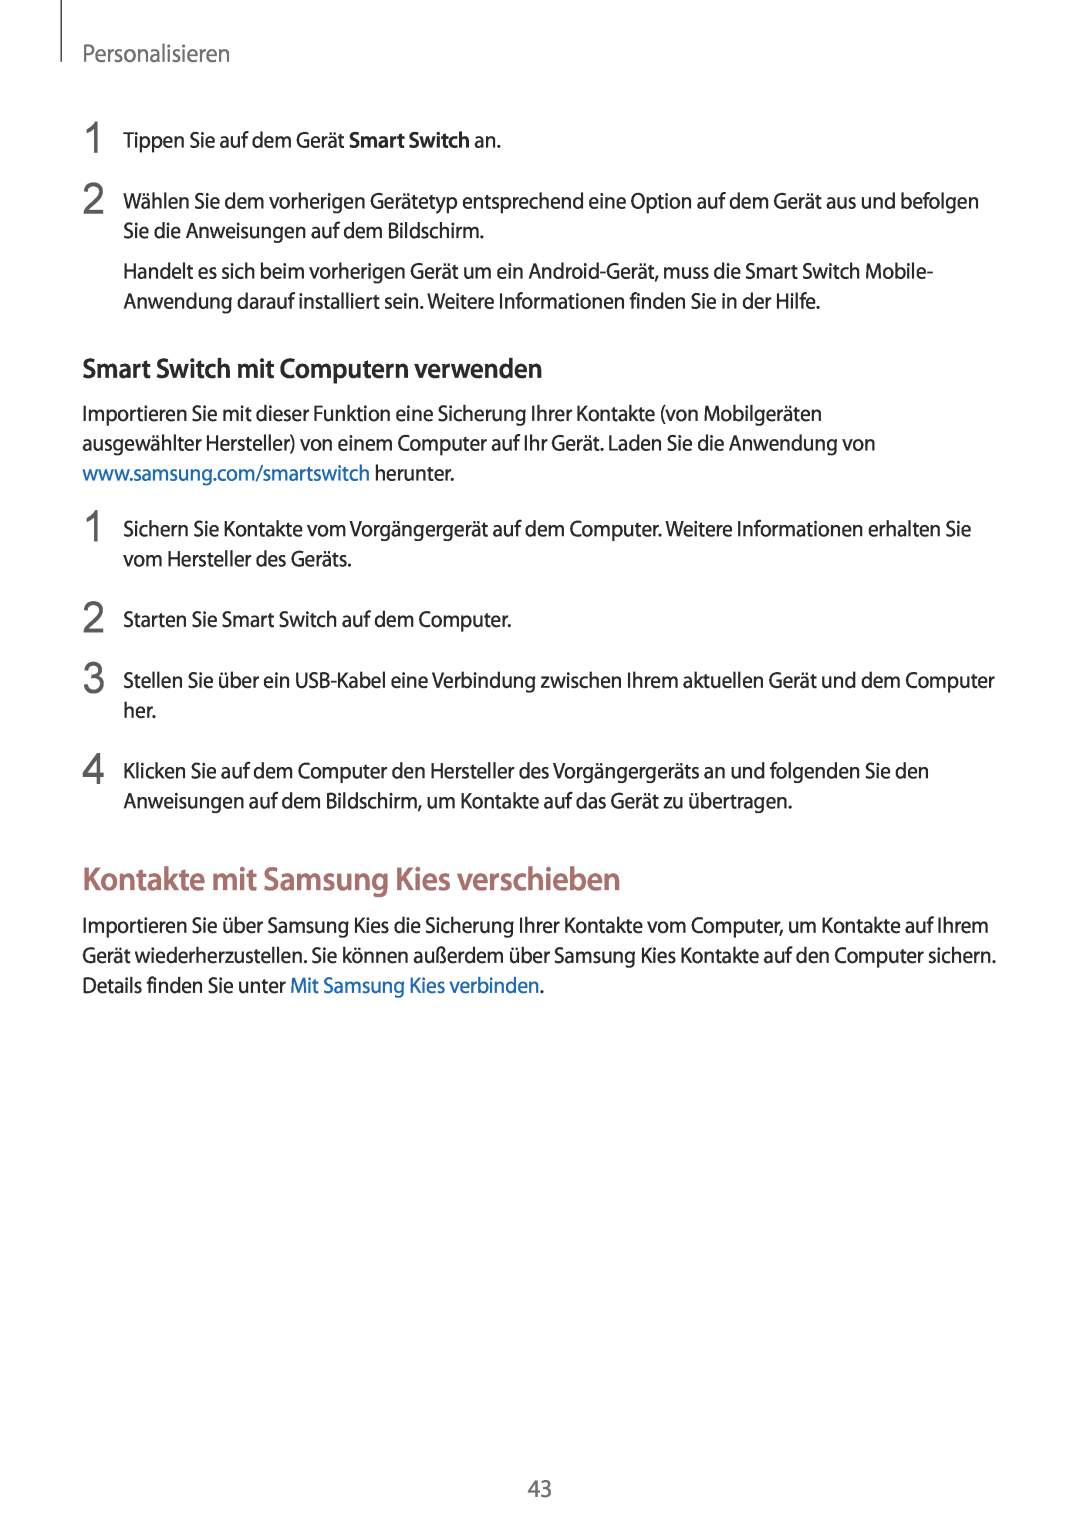 Samsung SM-G901FZBADTM manual Kontakte mit Samsung Kies verschieben, Smart Switch mit Computern verwenden, Personalisieren 